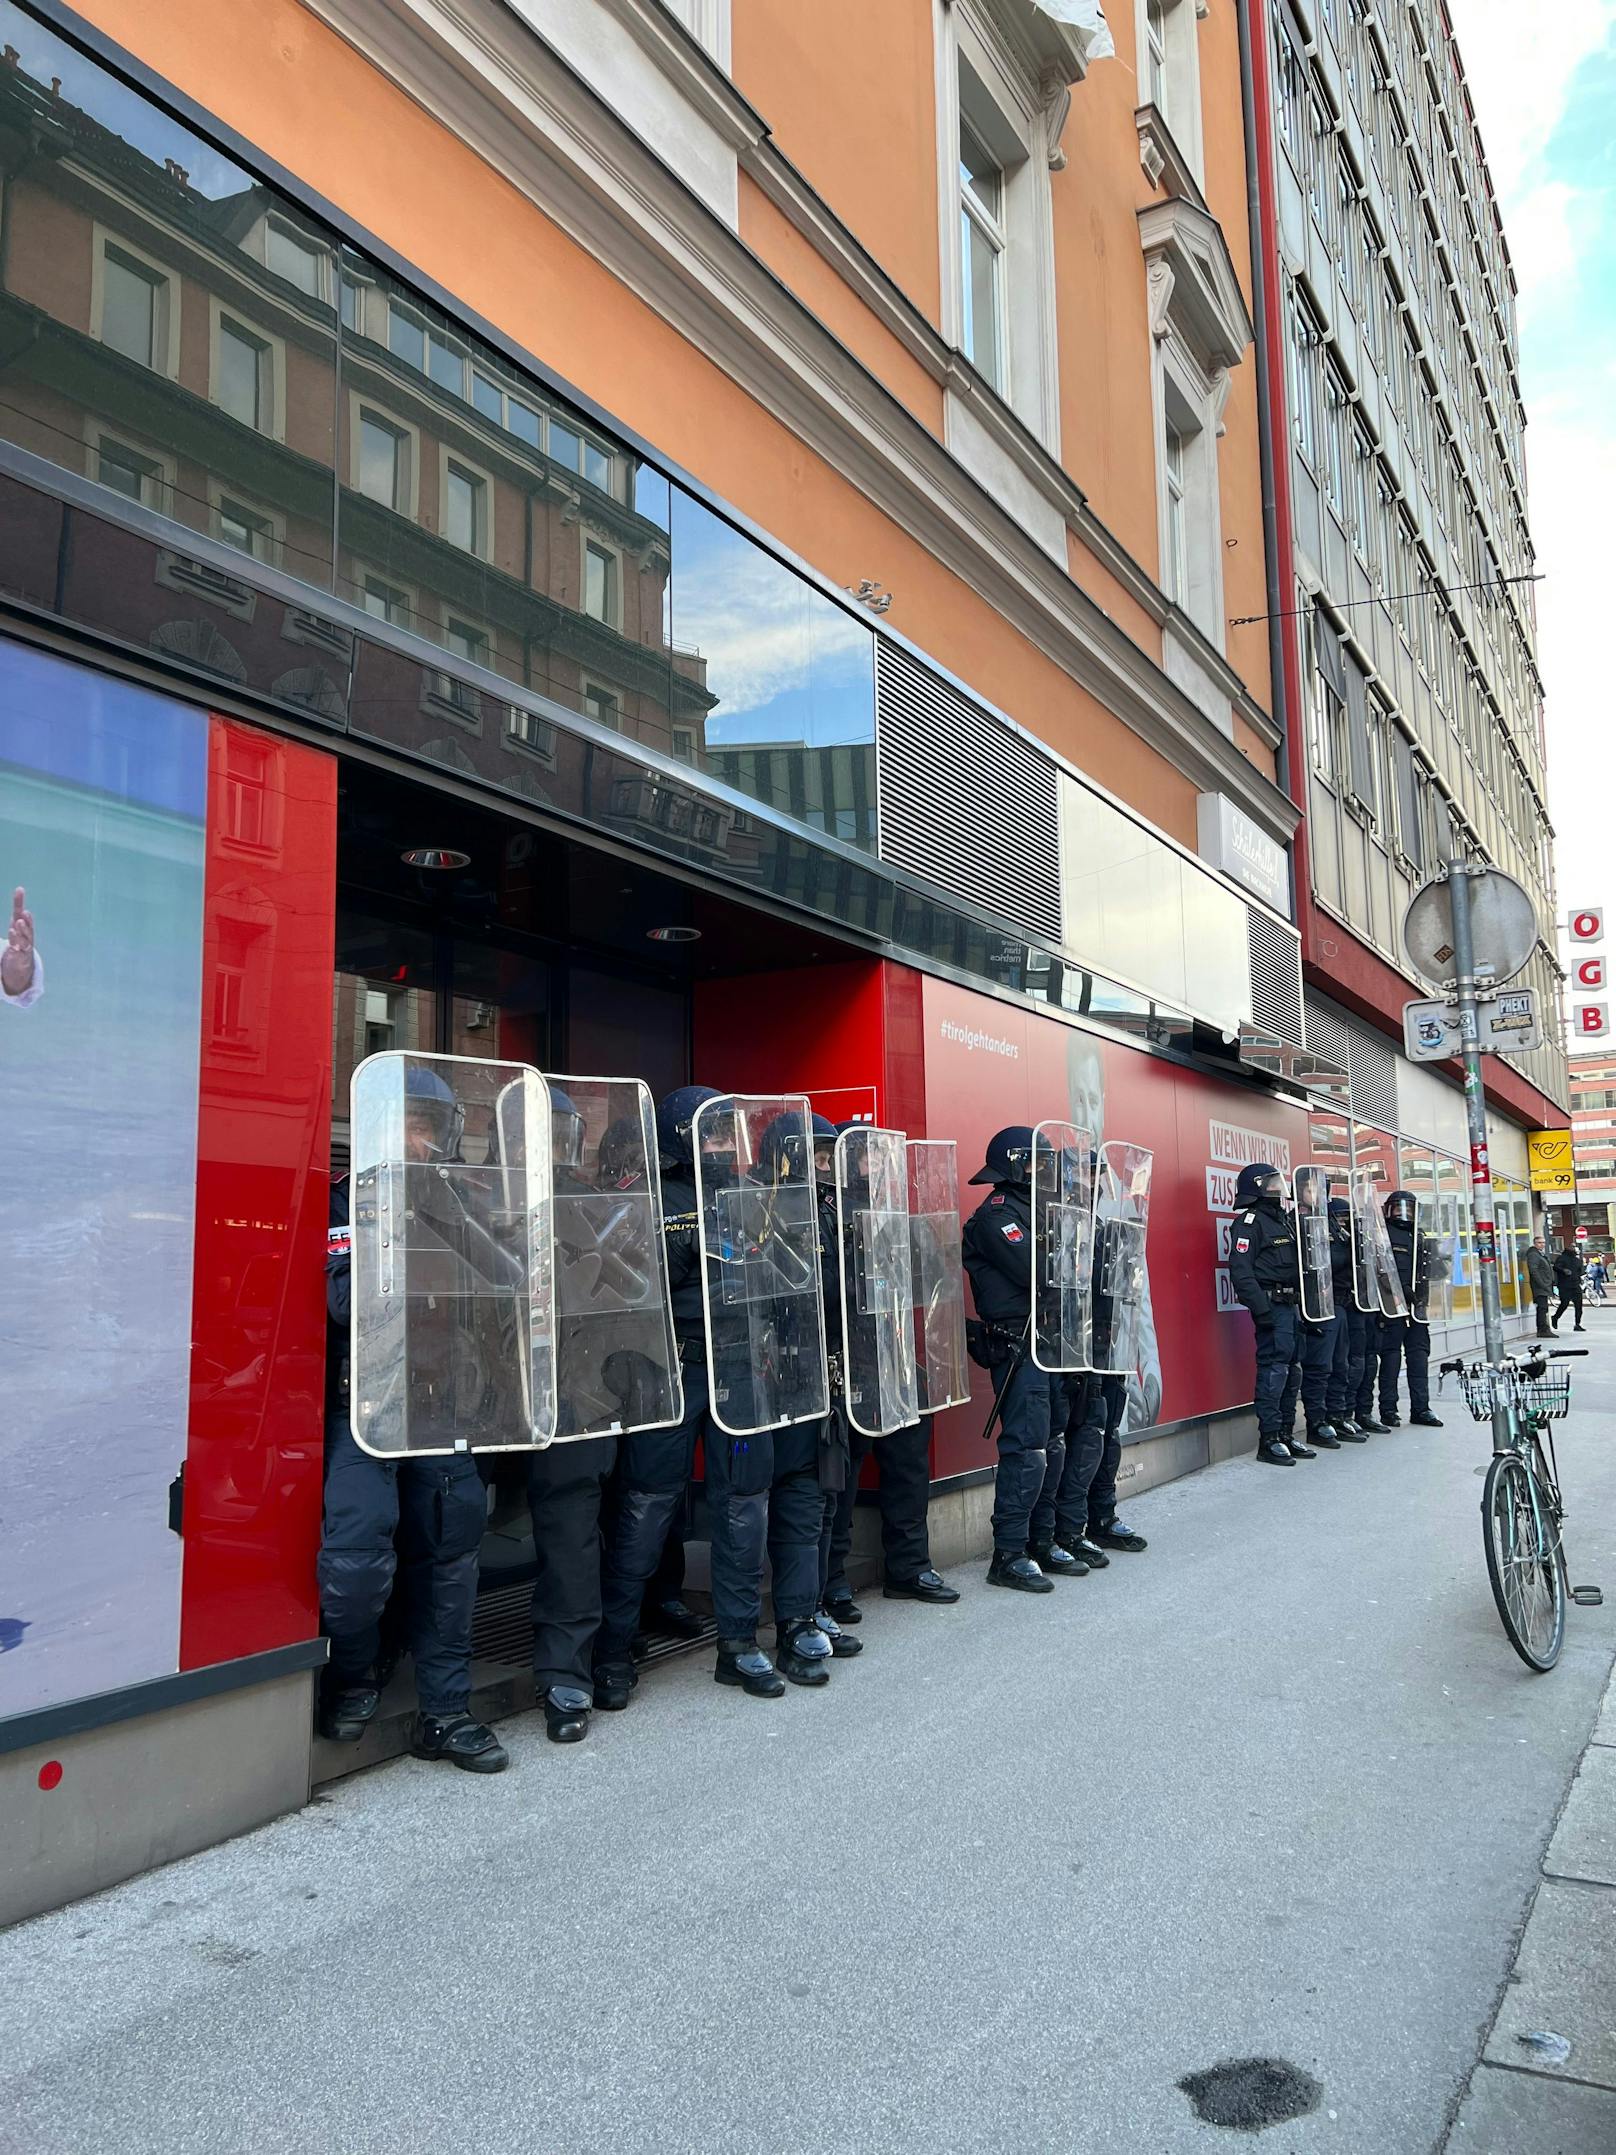 Rund 600 Personen zogen am Samstag im Rahmen einer Demo unter dem Motto "Grenzen töten" durch Innsbruck.